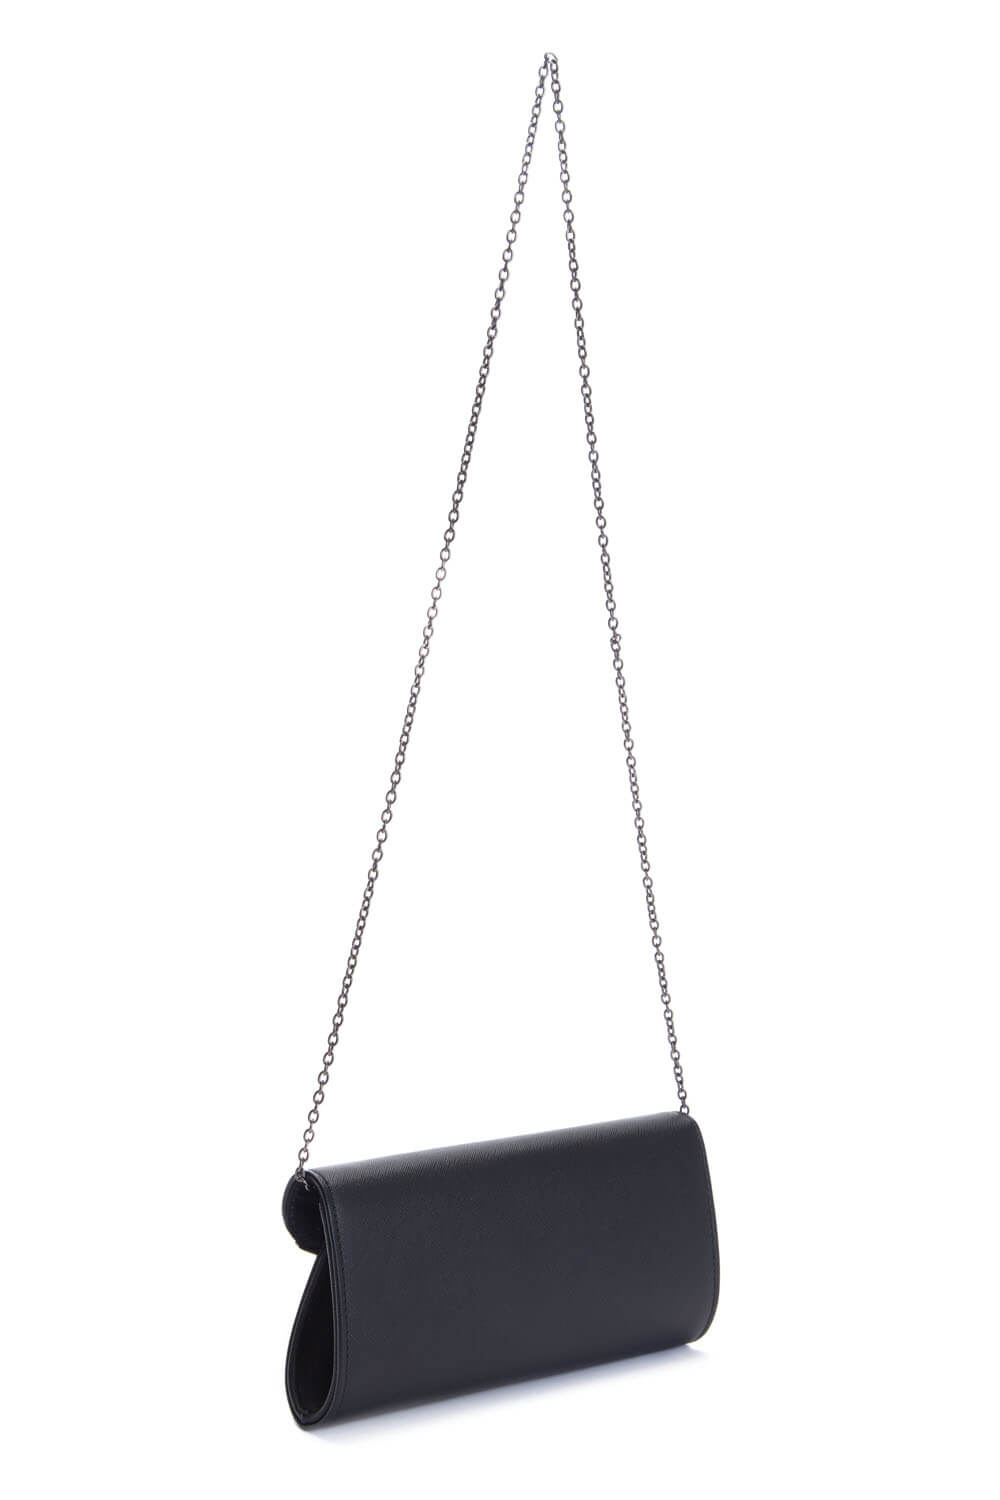 Black Envelope Clutch Bag, Image 3 of 6